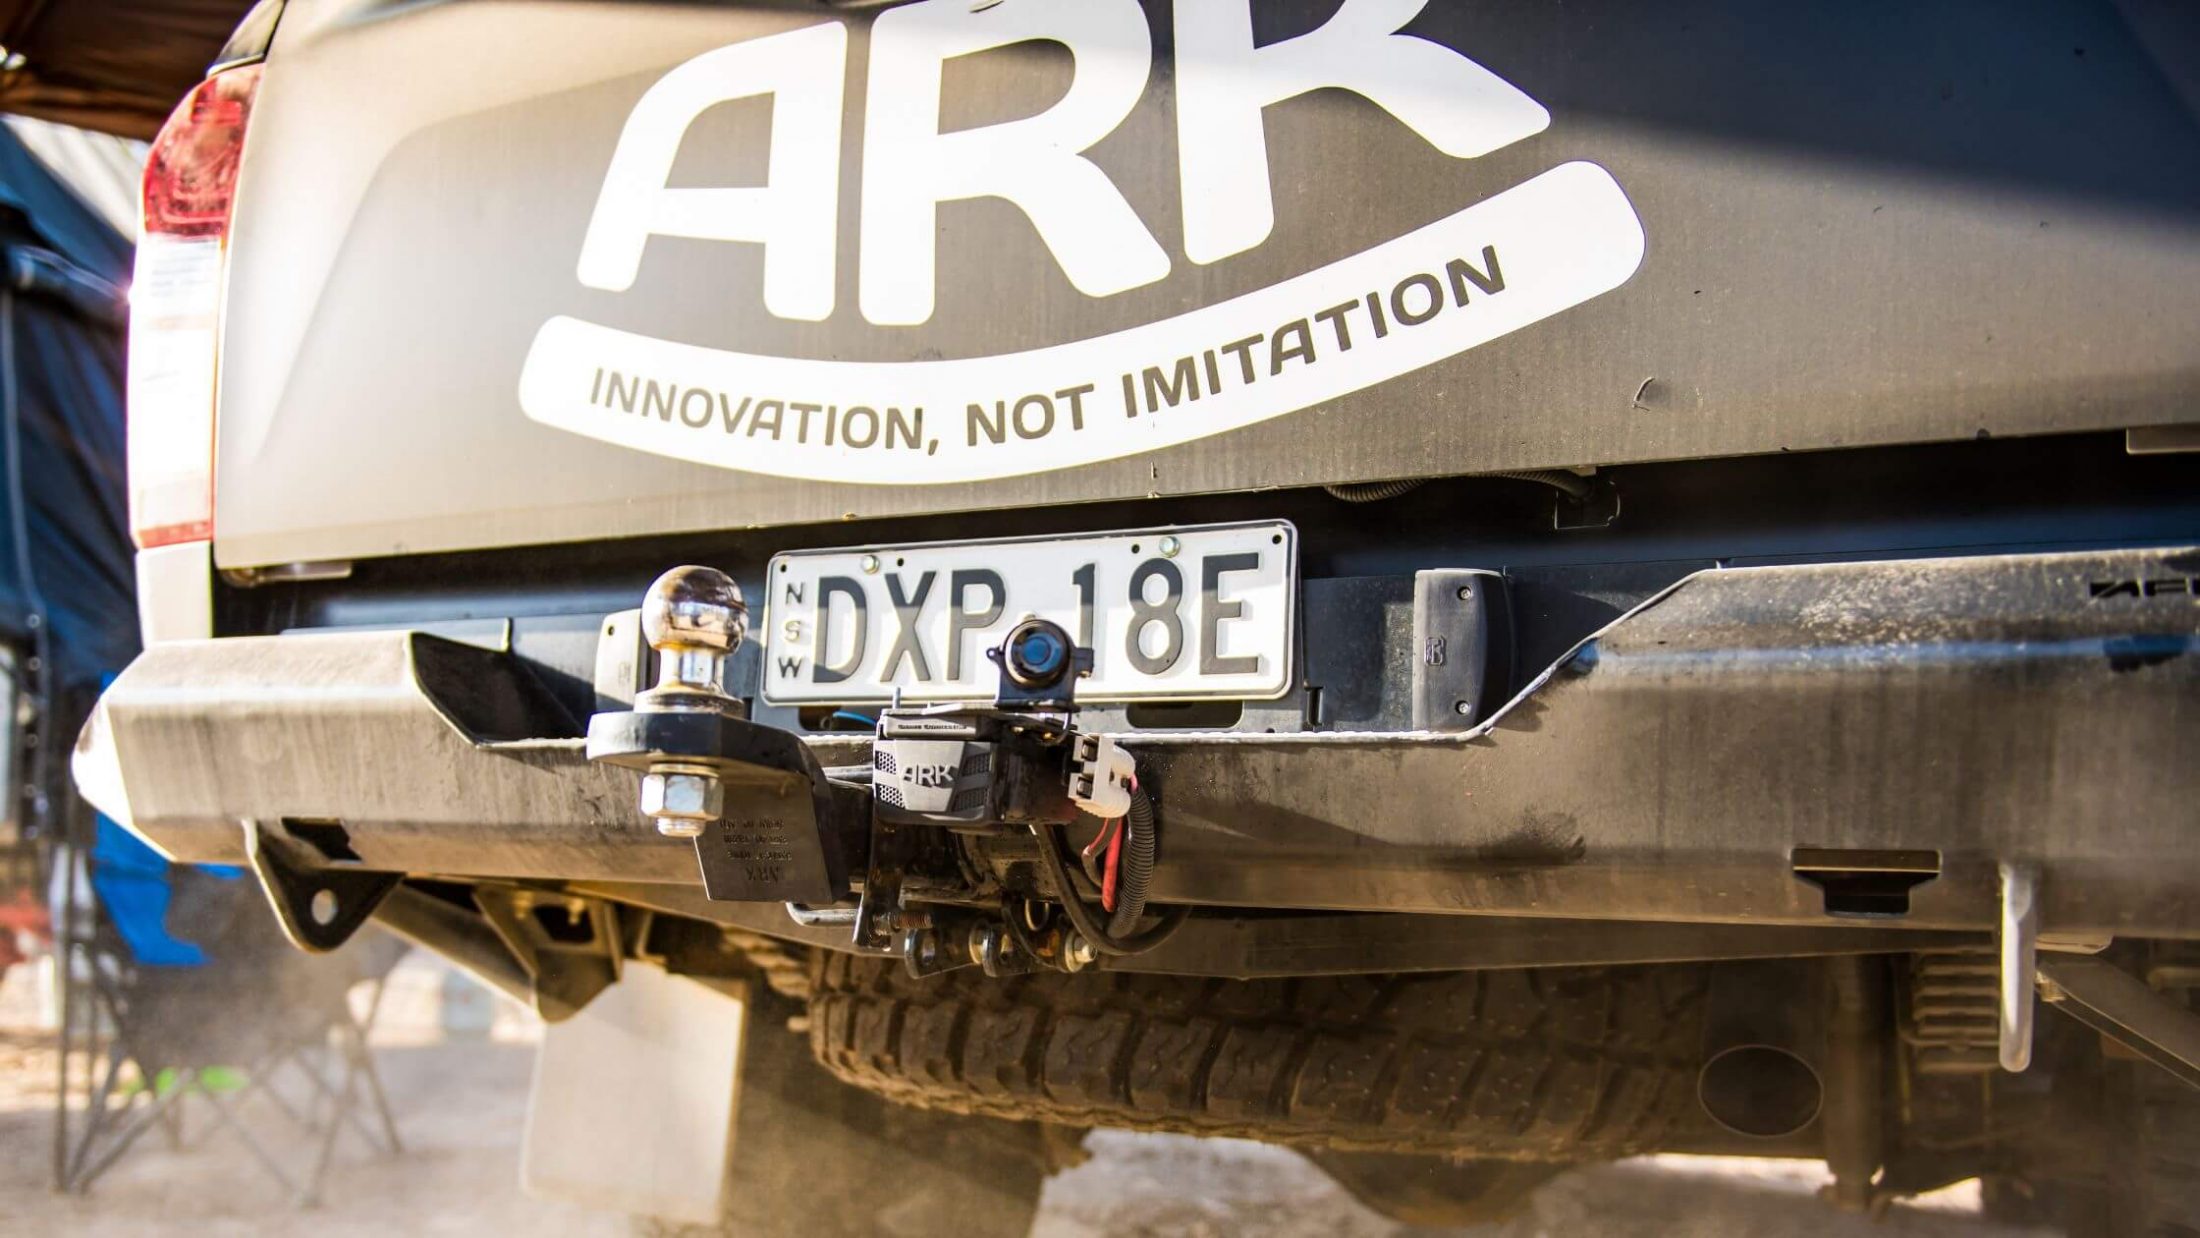 ARK-Innovation-Not-Imitation